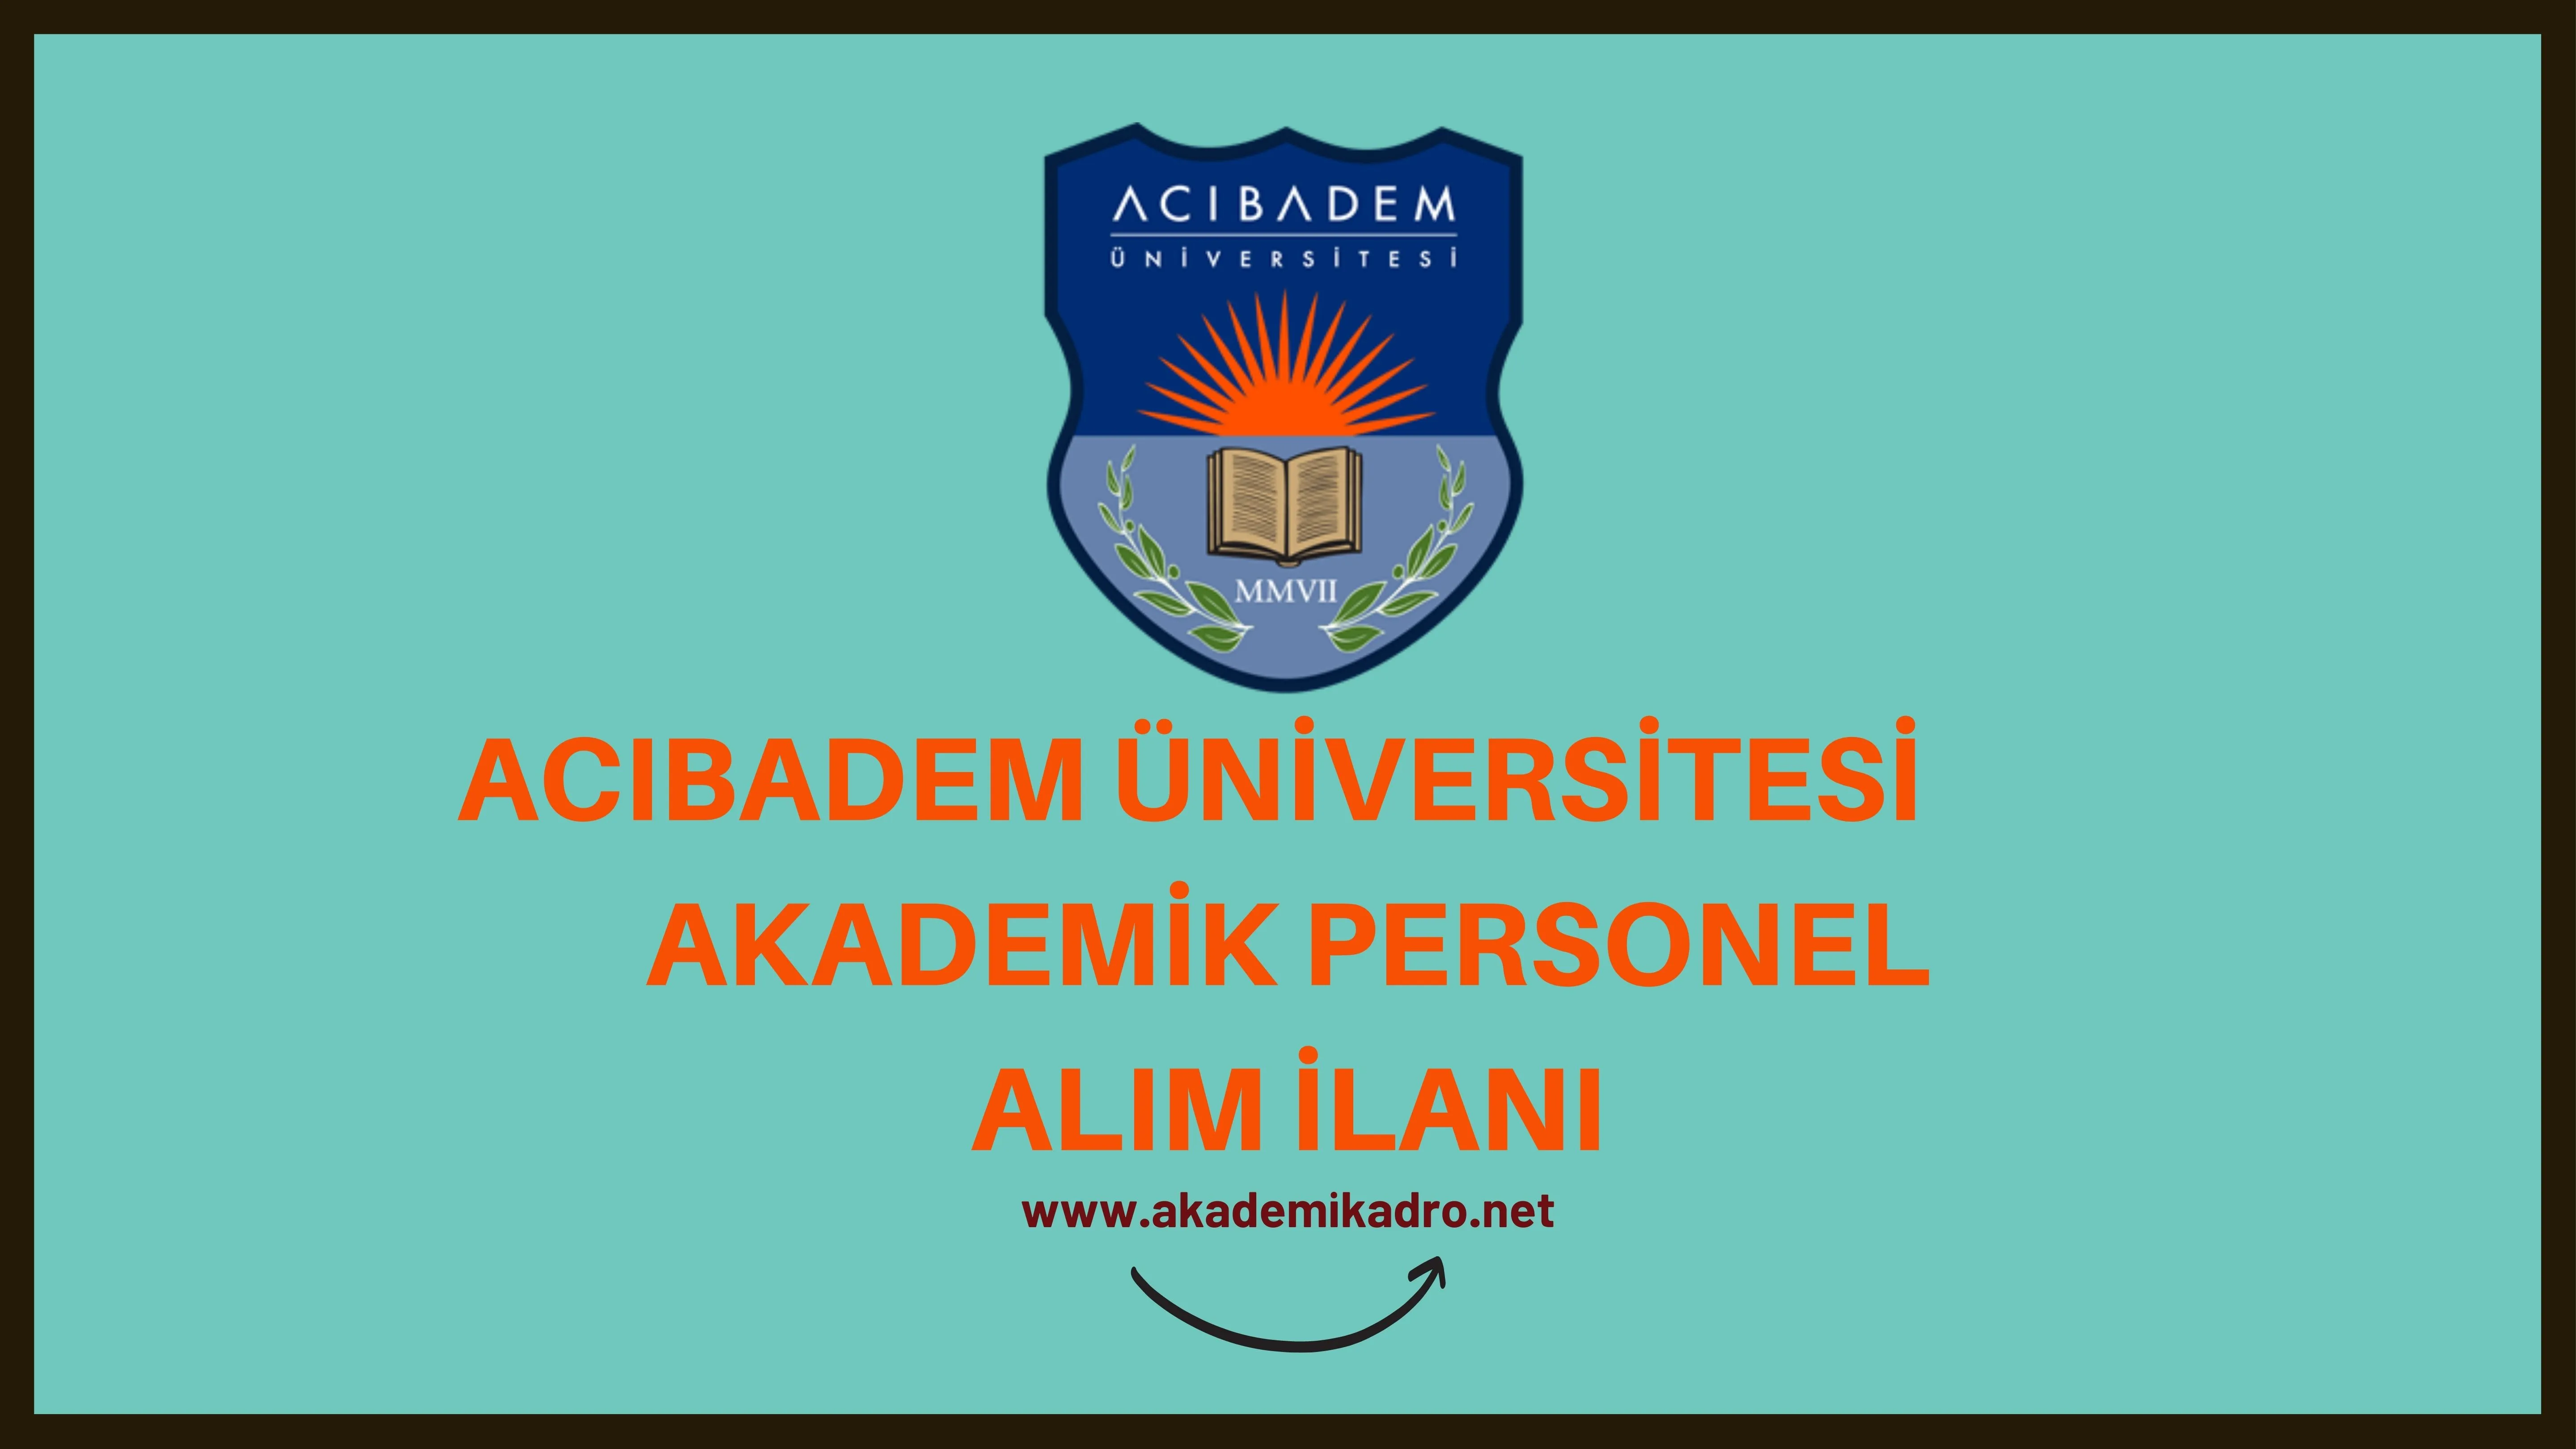 Acıbadem Mehmet Ali Aydınlar Üniversitesi çeşitli branşlarda 7 akademik personel alacak.